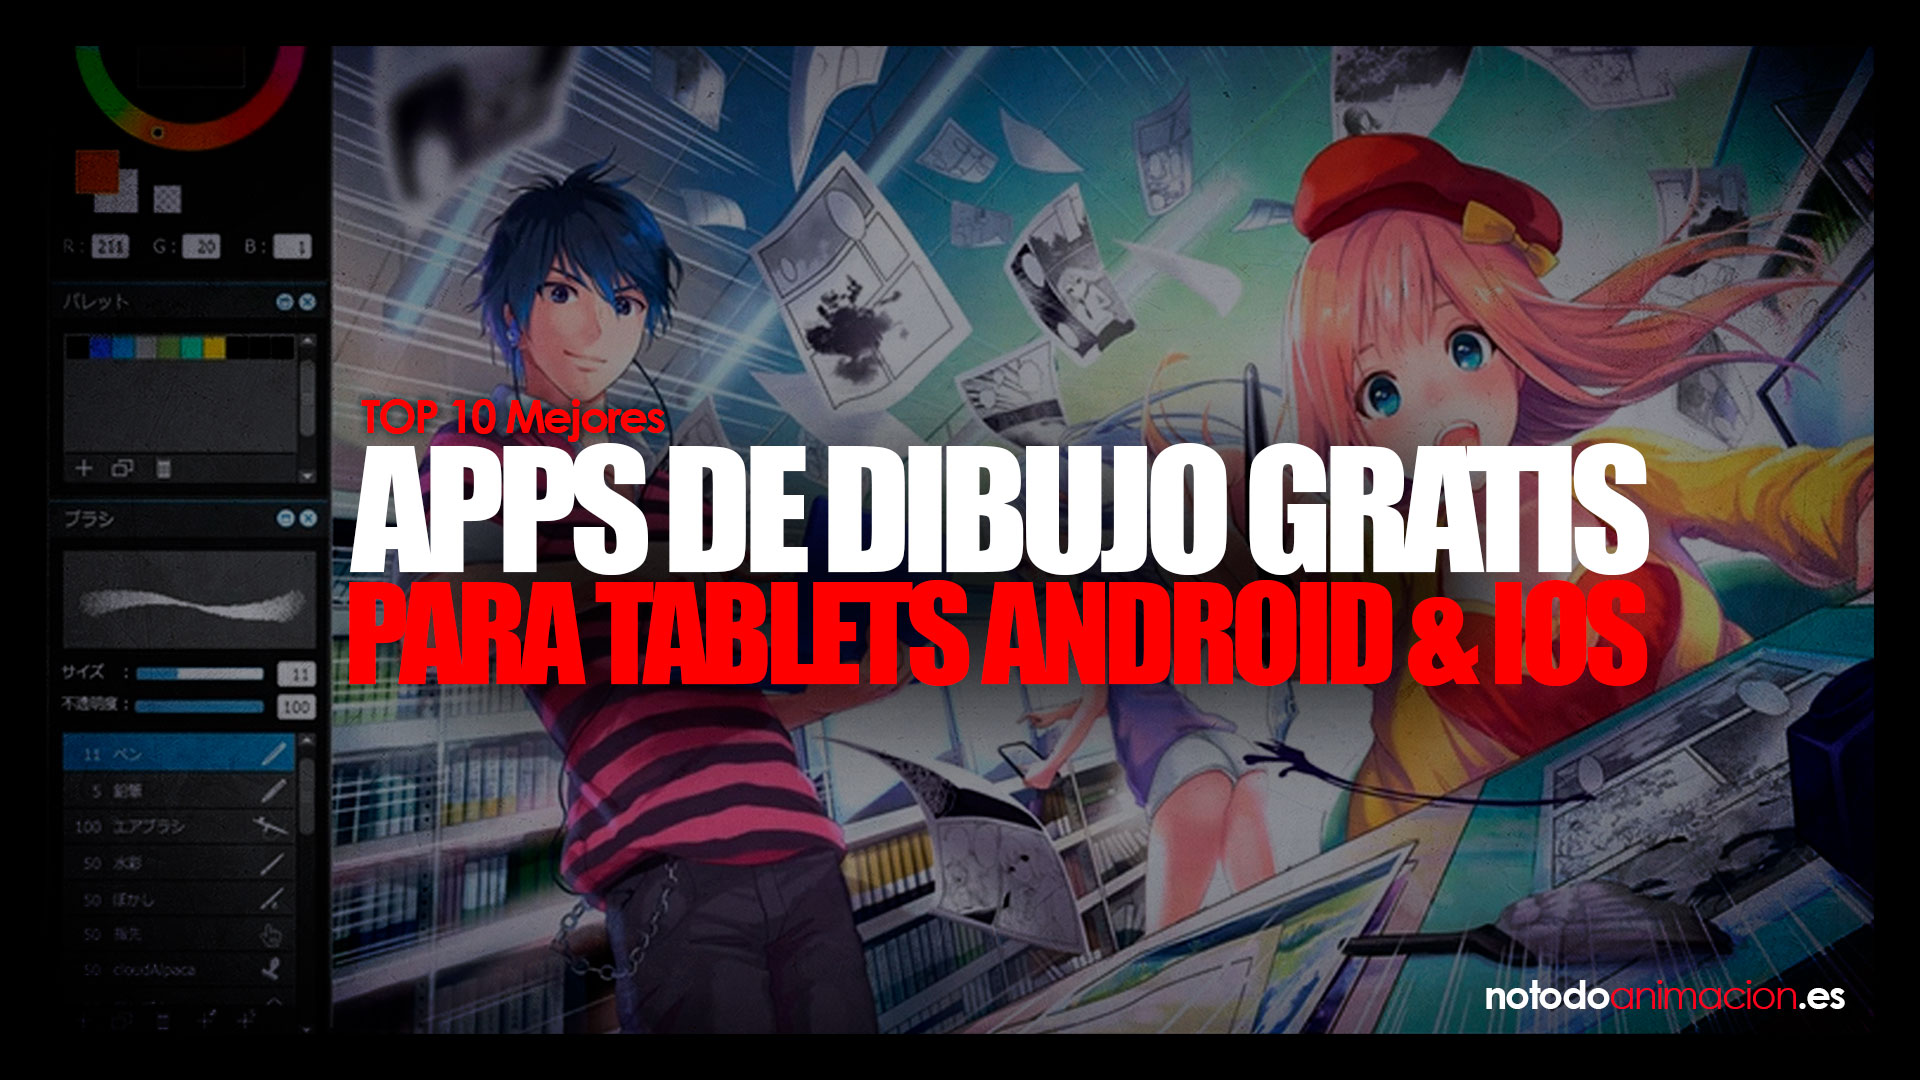 TOP 10 APPS de Dibujo GRATIS para Tablets ❤️ Android & IOS